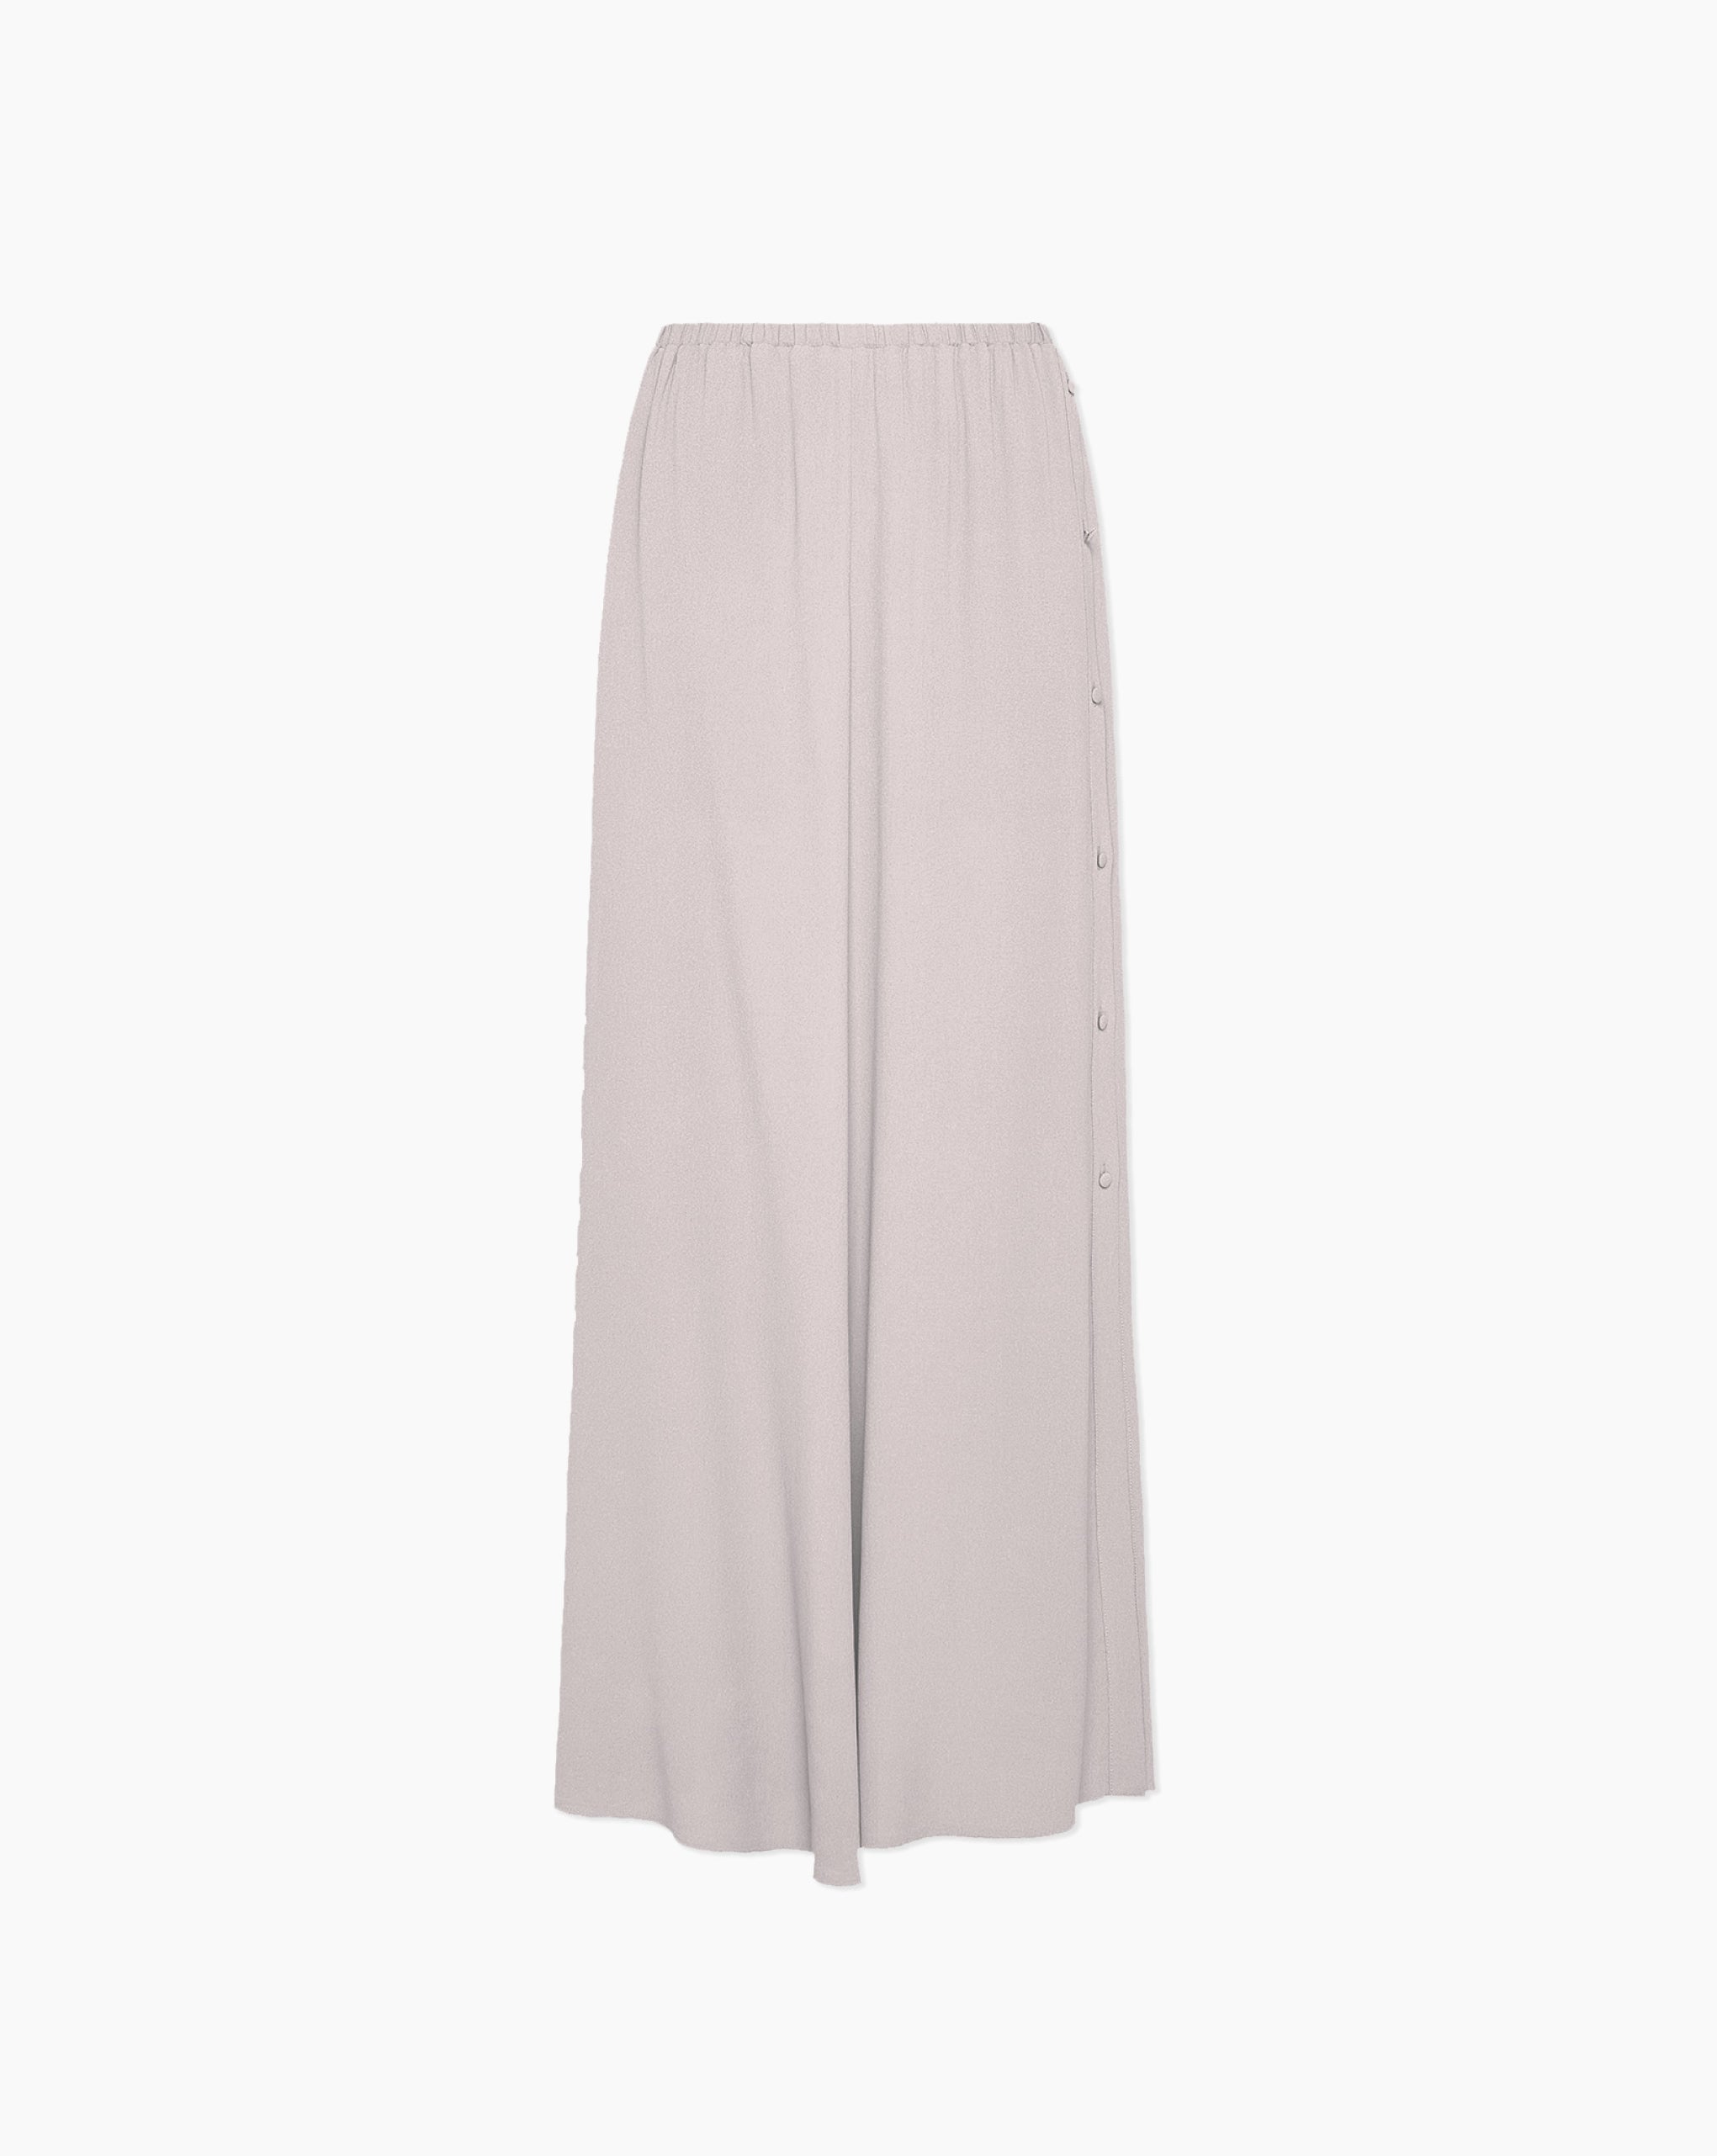 Moroccan Crepe Long Skirt